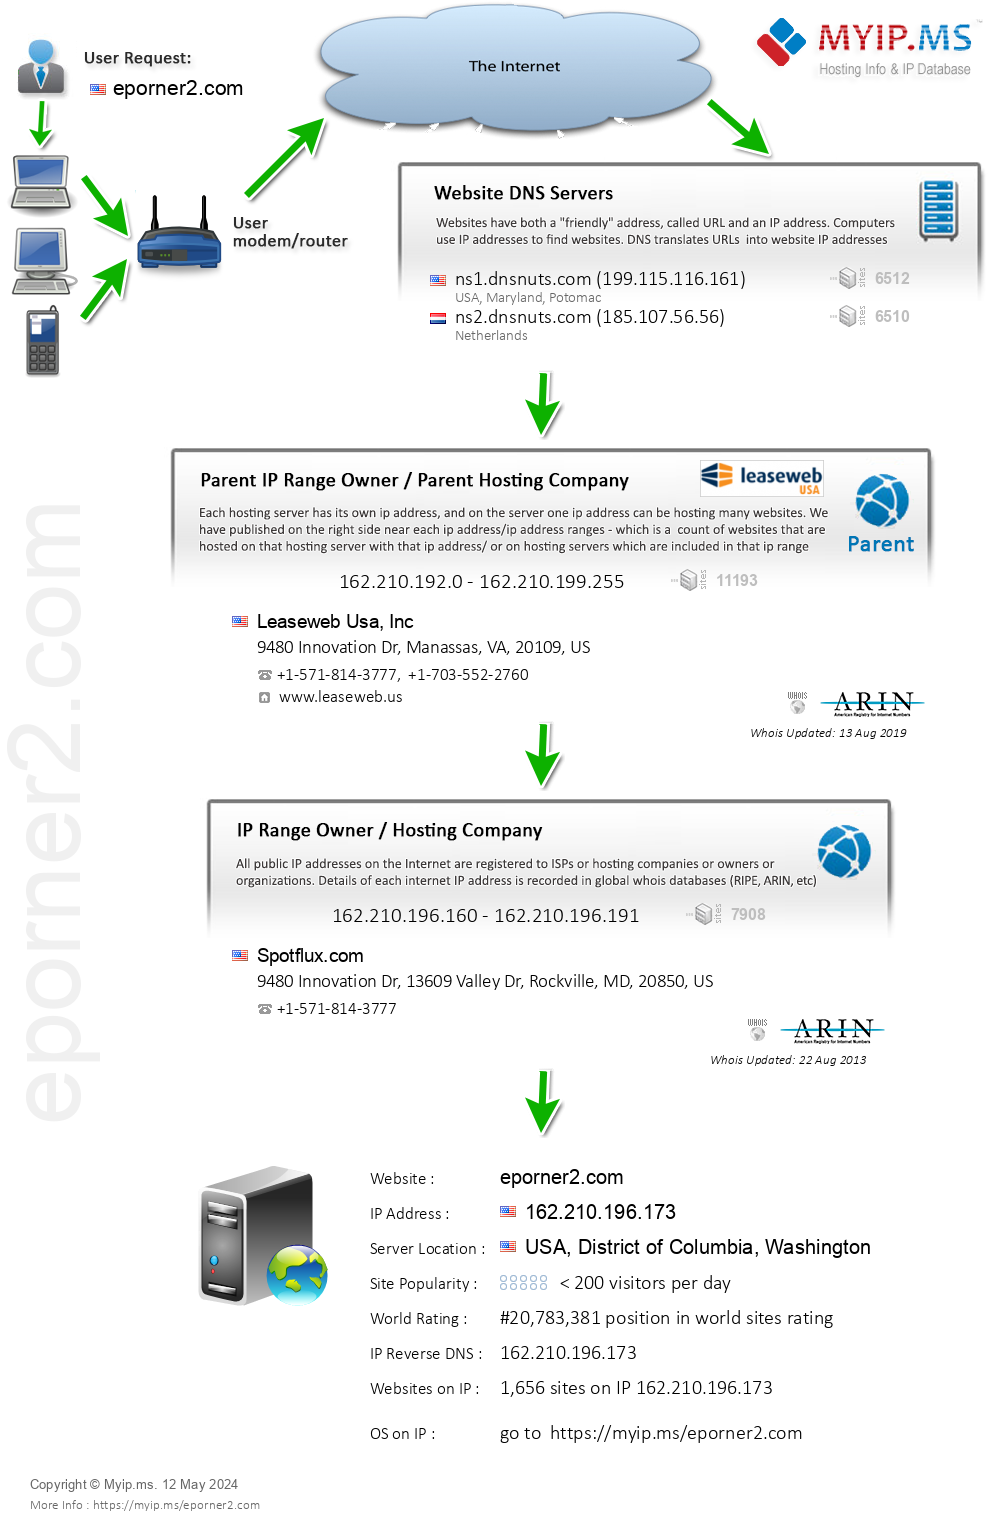 Eporner2.com - Website Hosting Visual IP Diagram